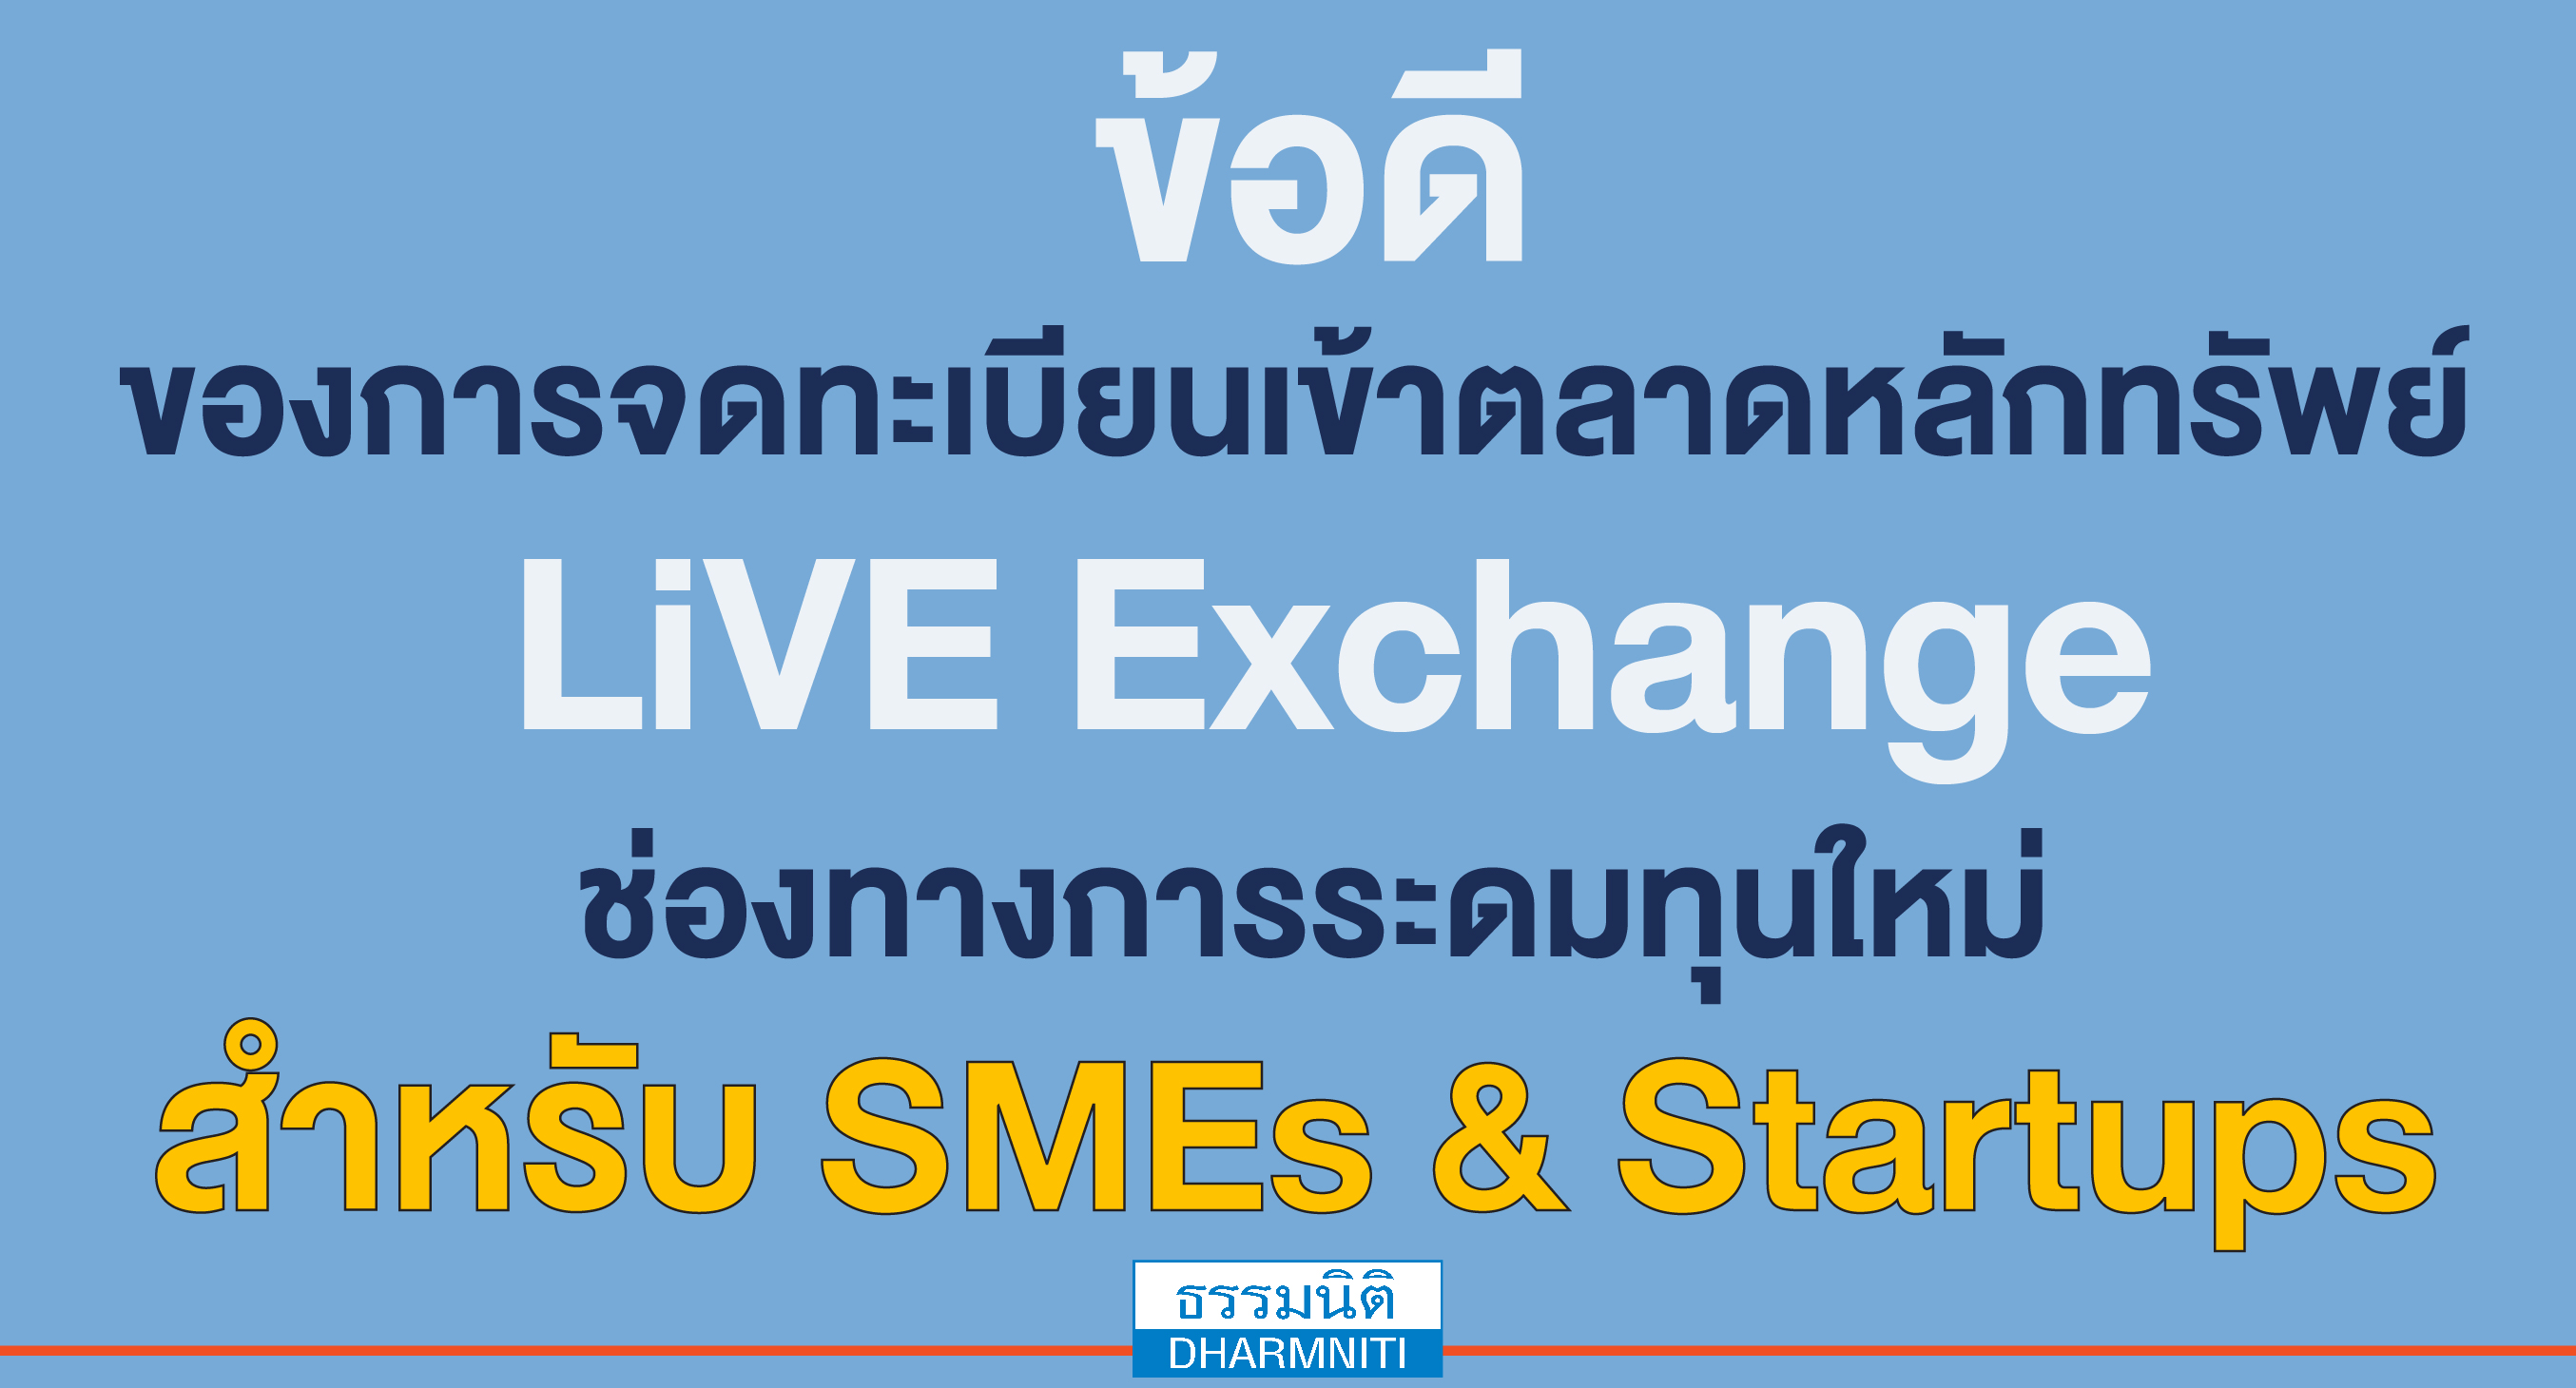 ข้อดี ของการจดทะเบียนเข้าตลาดหลักทรัพย์ live exchange ช่องทางการระดมทุนใหม่ สำหรับ smes  startups